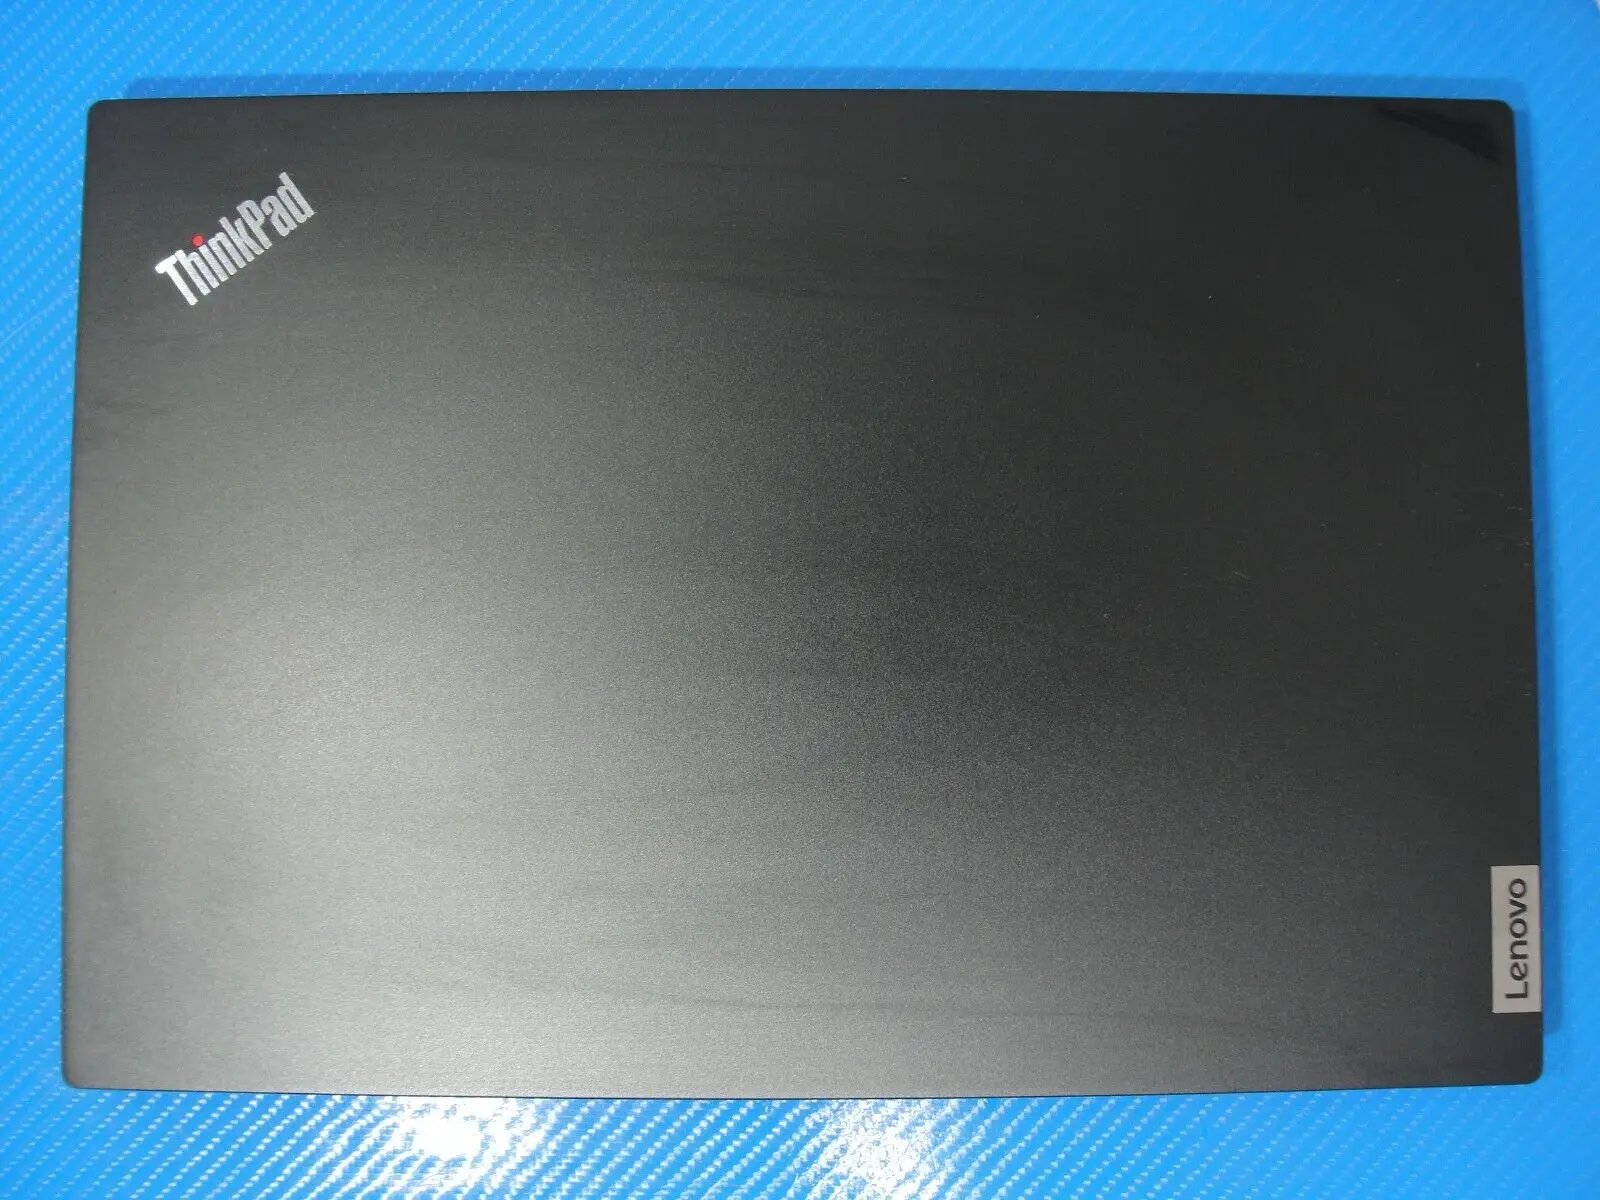 Lenovo Thinkpad E14 G2 Laptop i5-1135G7 8GB 256GB SSD Battery 5 cycles Warranty